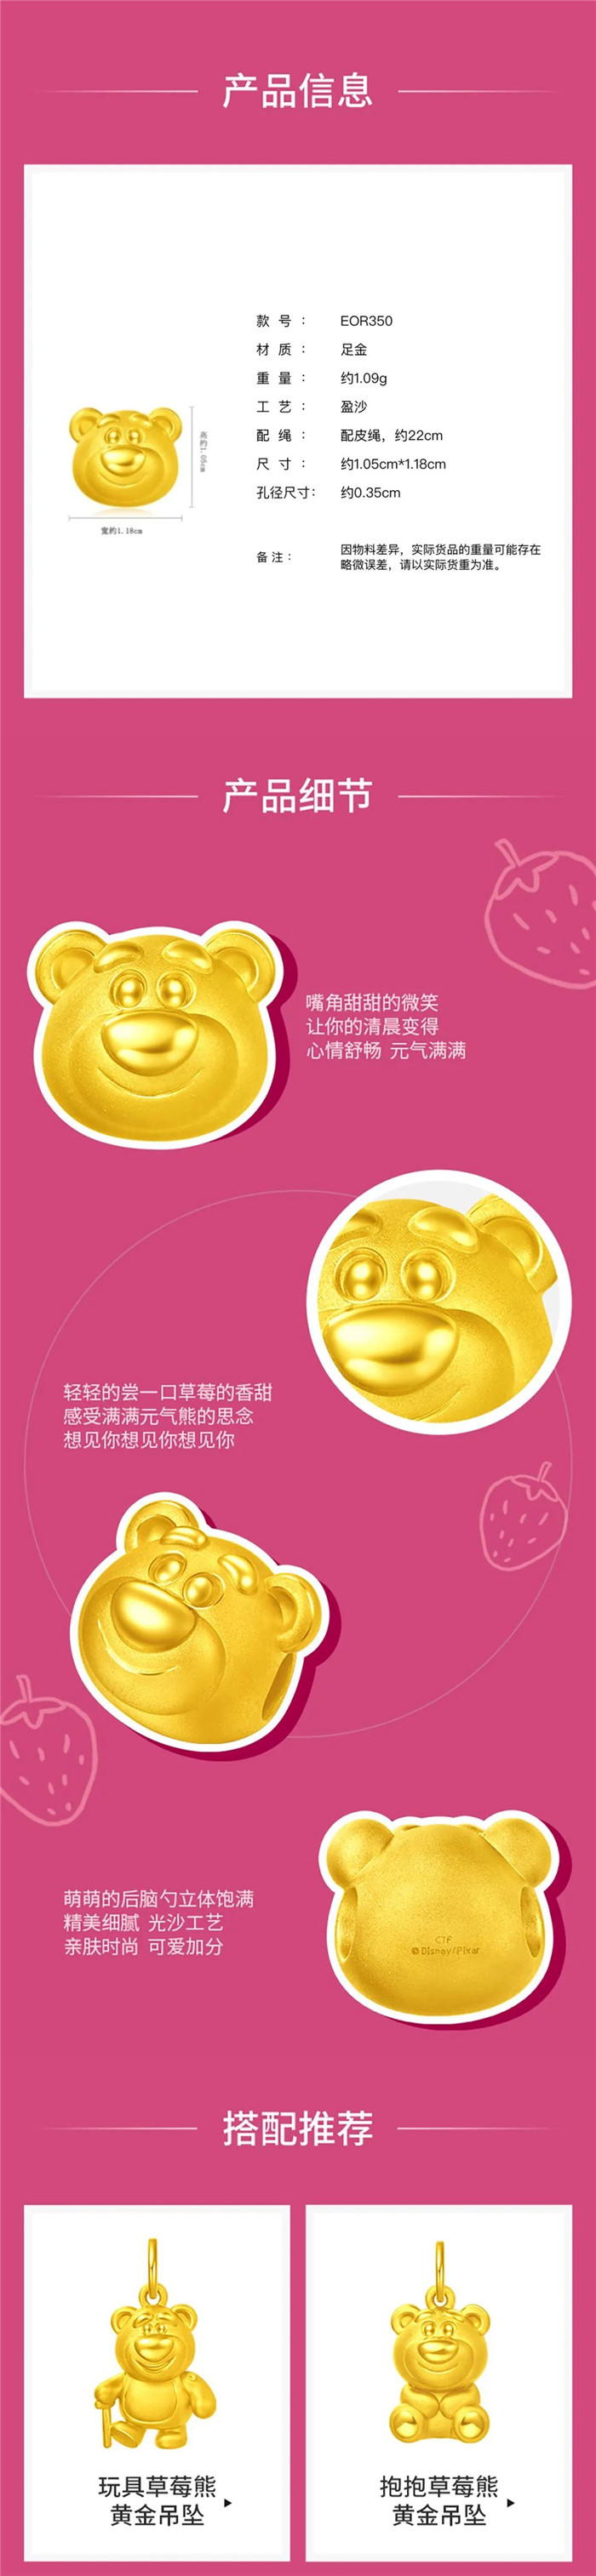 老字号加速拥抱新潮流，周大福在得物App独家首发迪士尼新品「草莓熊」